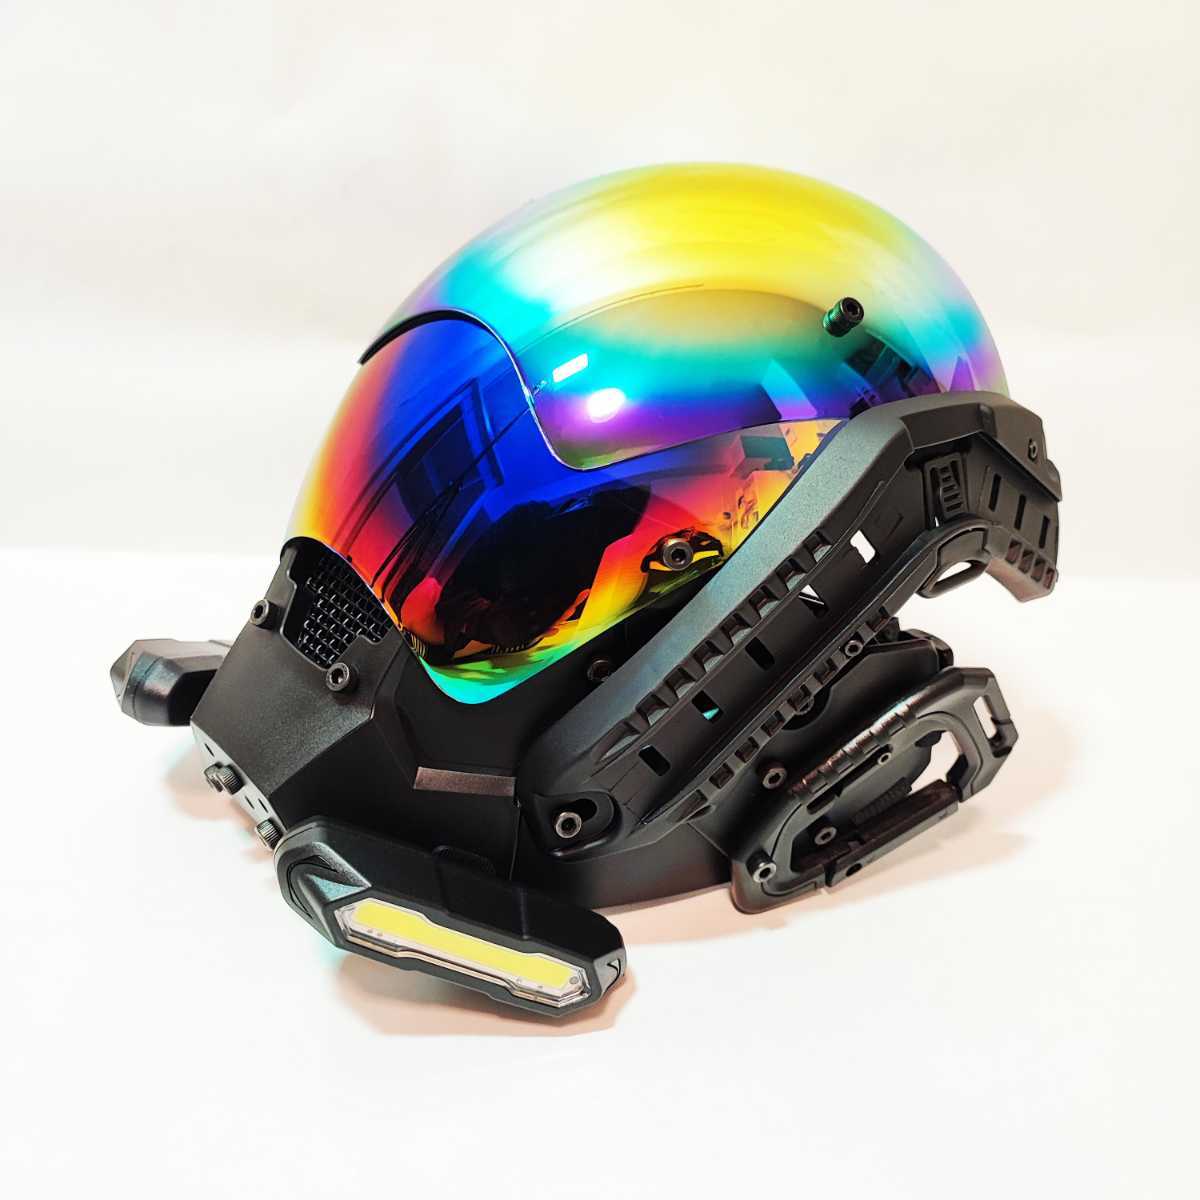 日本製サイバーパンク風フェイスマスクサイバーマスクLED発光タイプ 